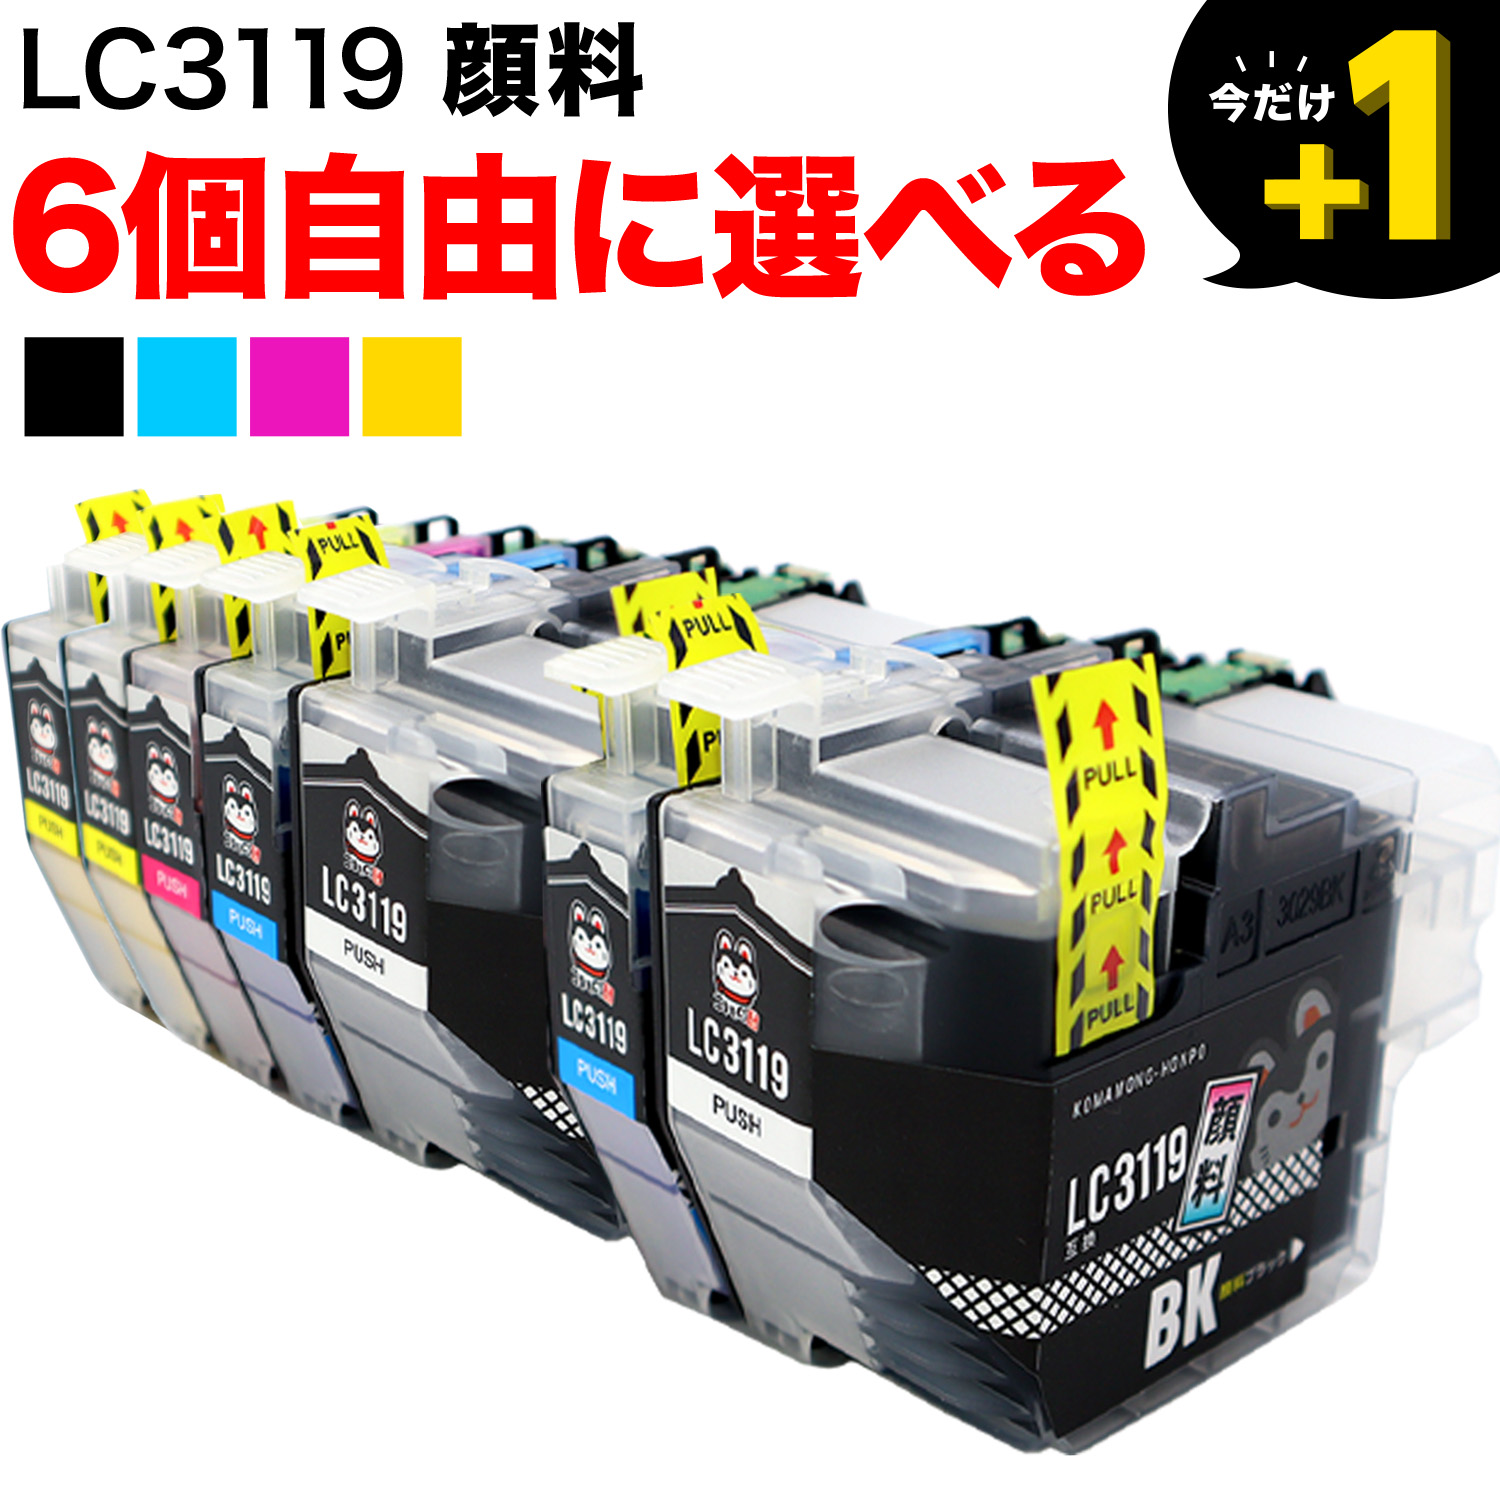 LC3119 ブラザー用 互換インクカートリッジ 全色顔料 大容量 自由選択6